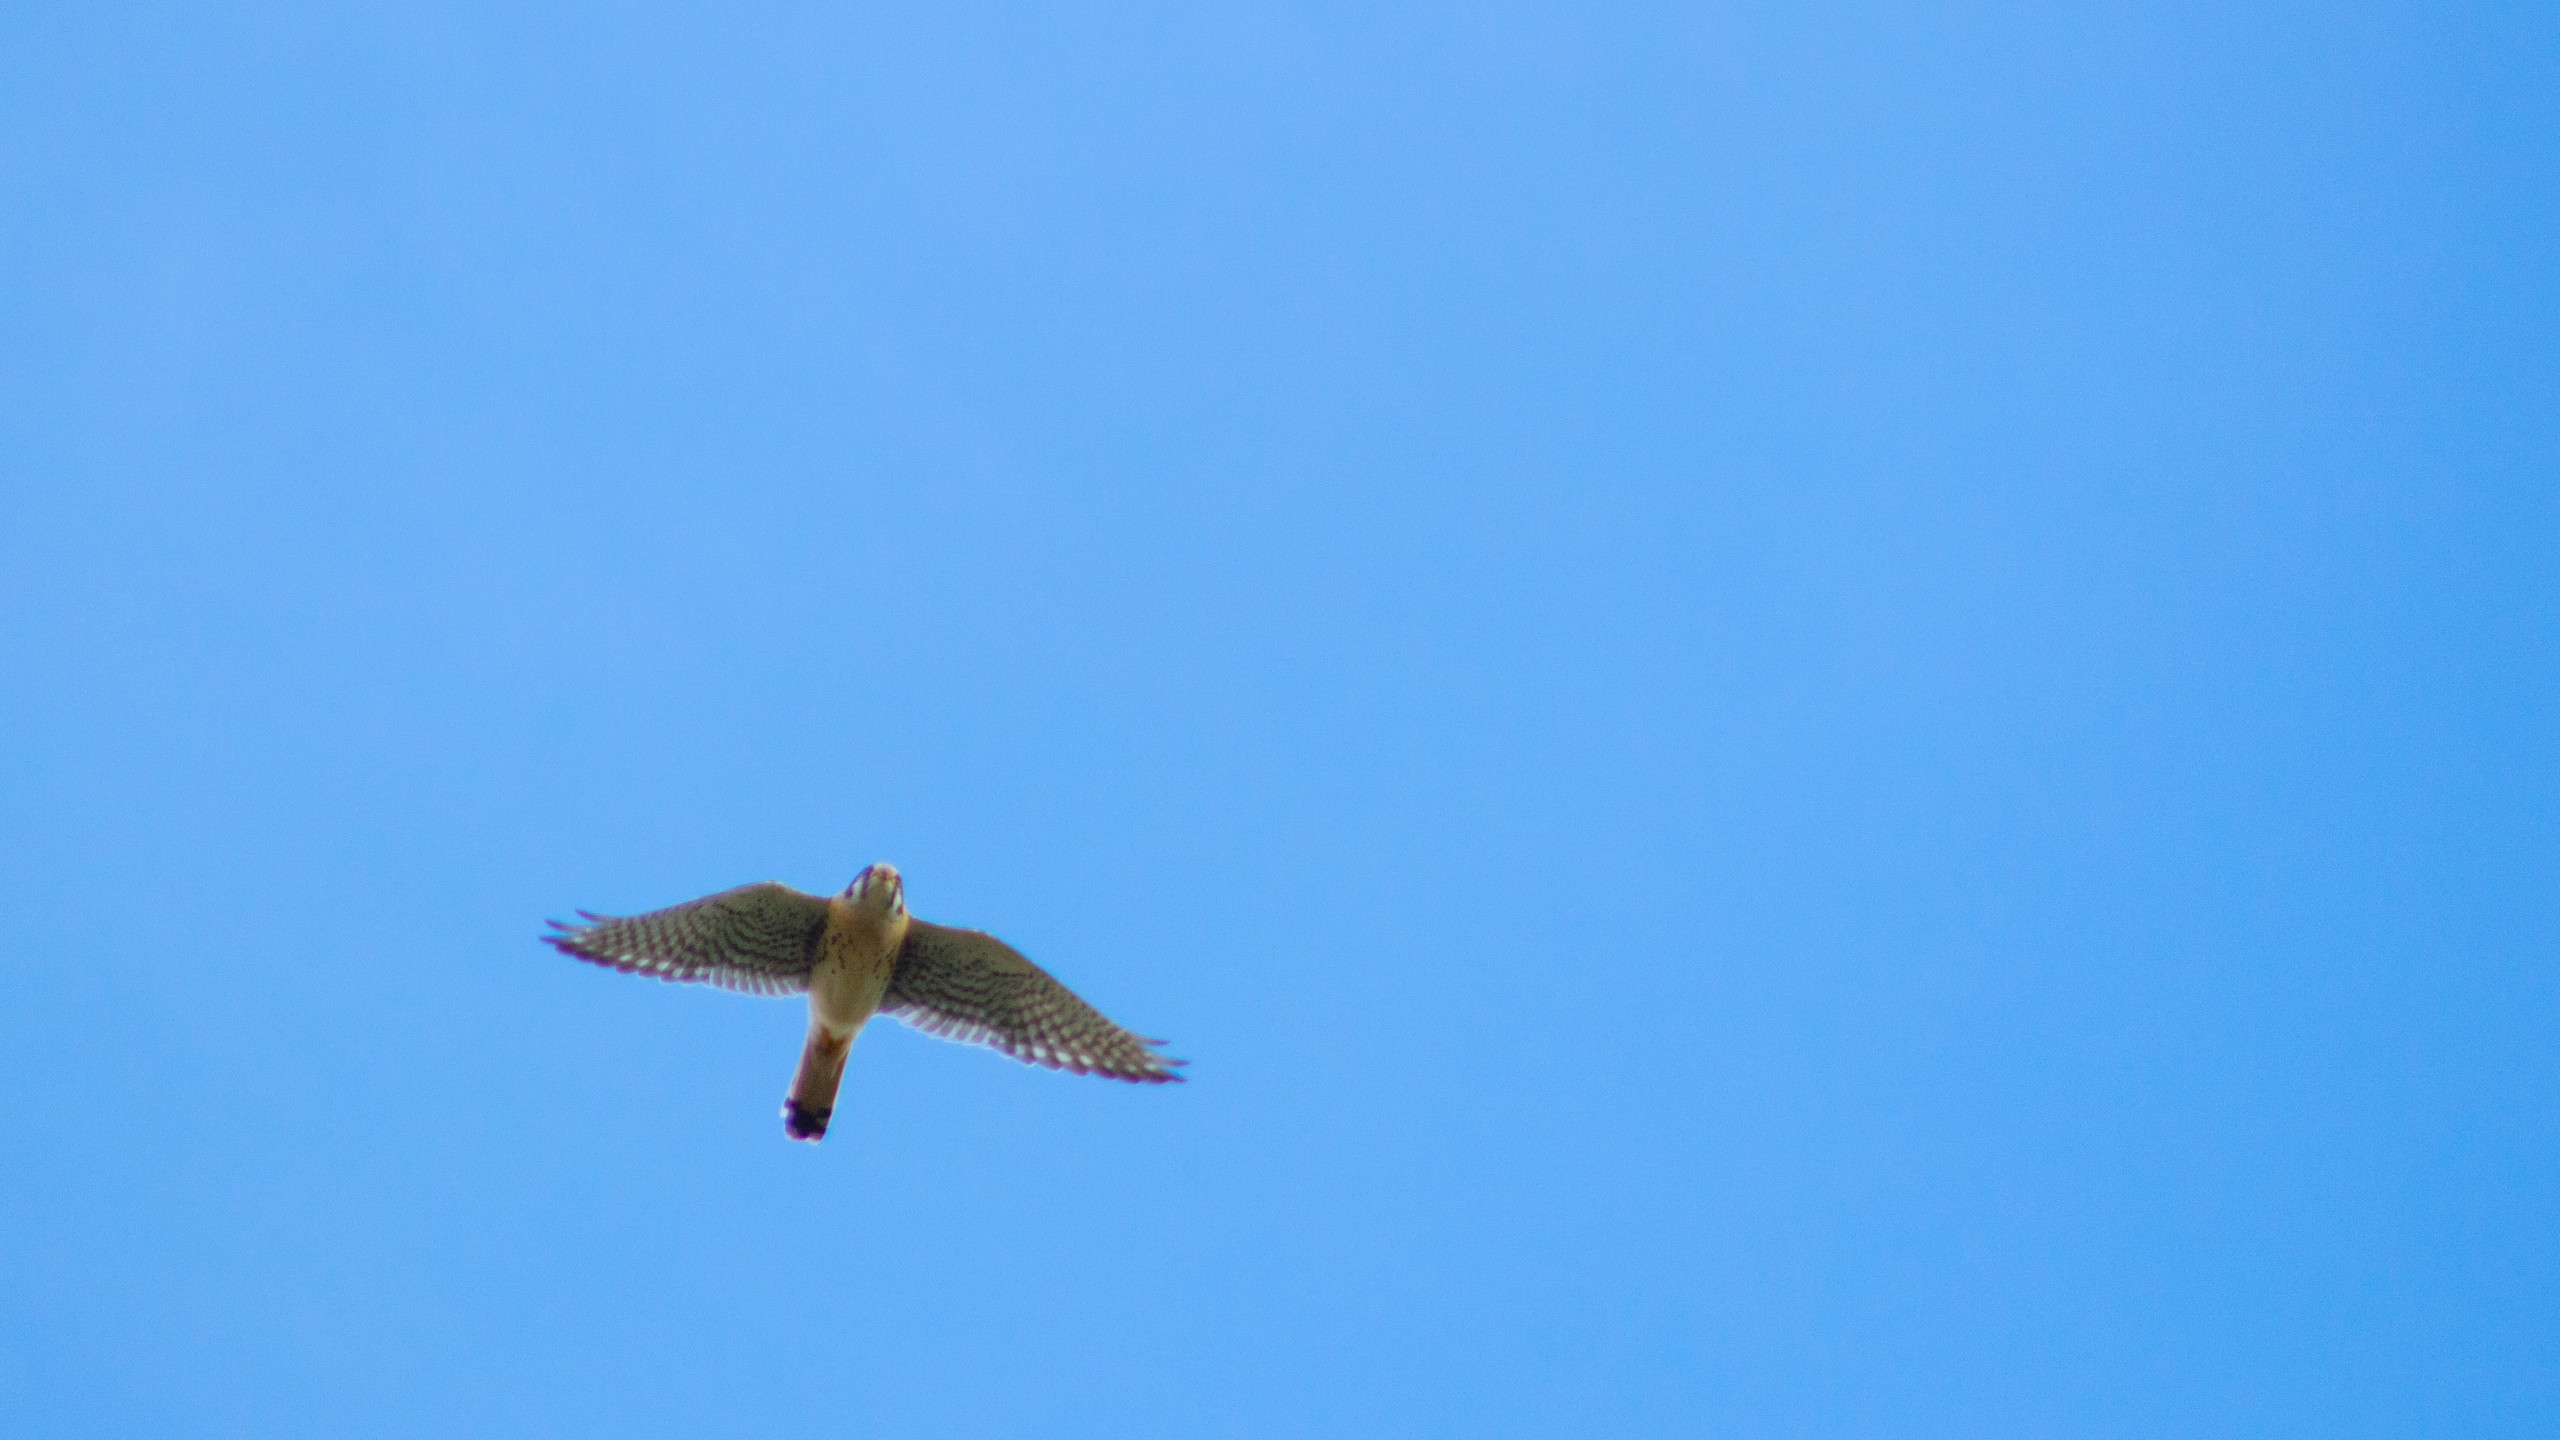 A kestrel taking off in flight